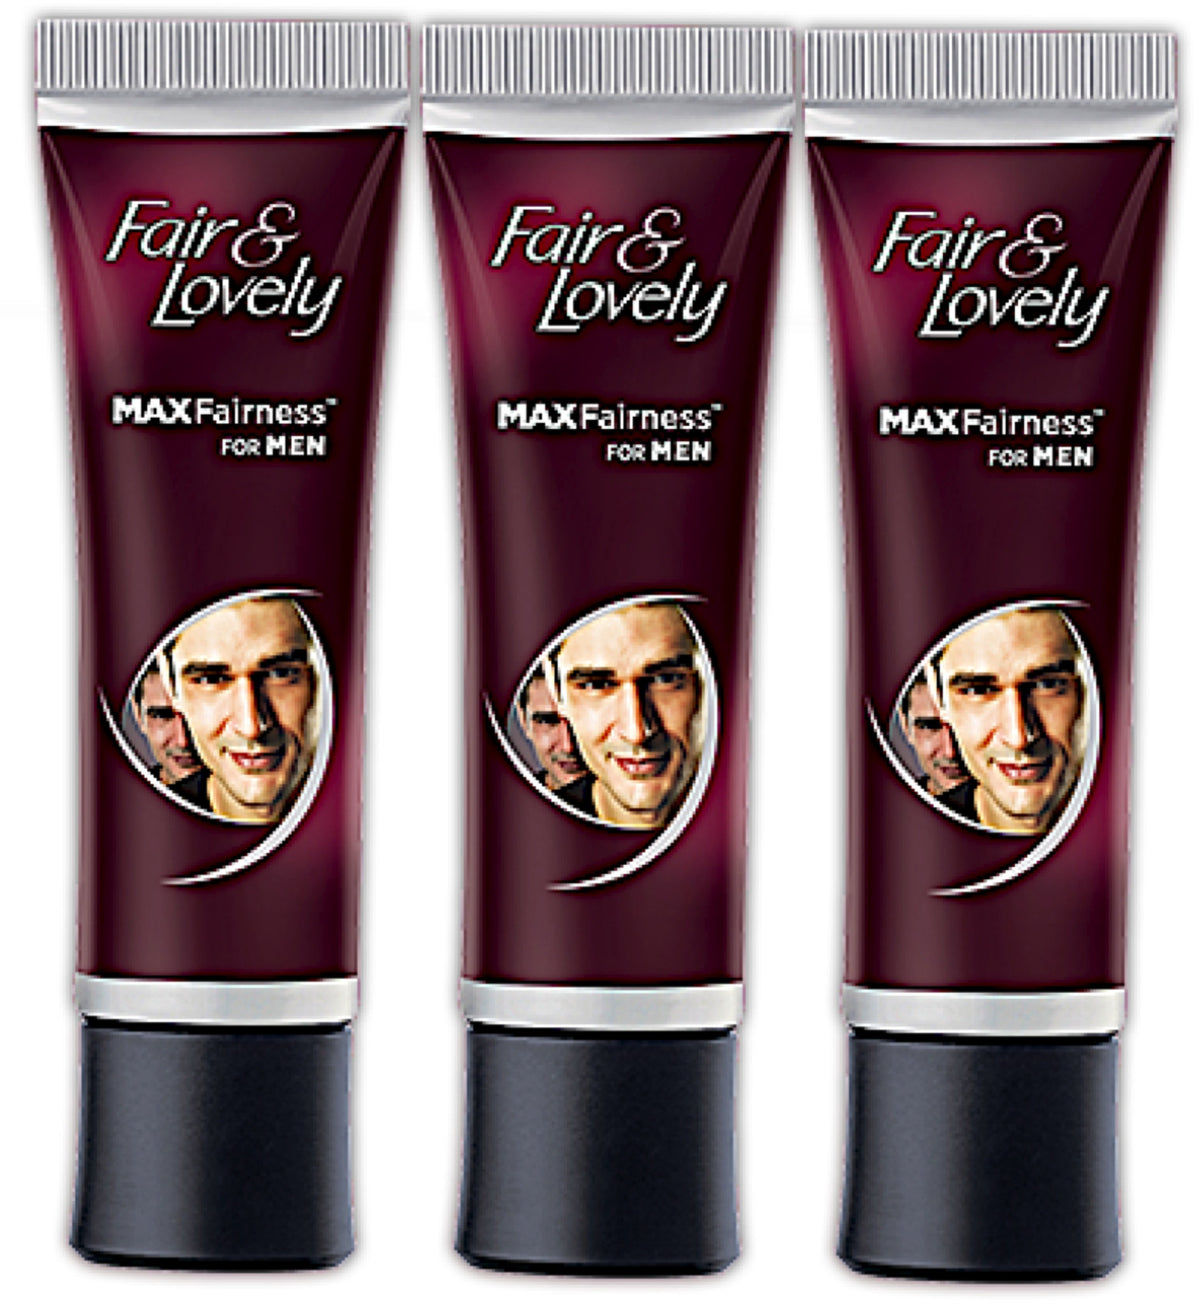 3 Pack Fair & Lovely Max Fairness for Men Cream 50g Each